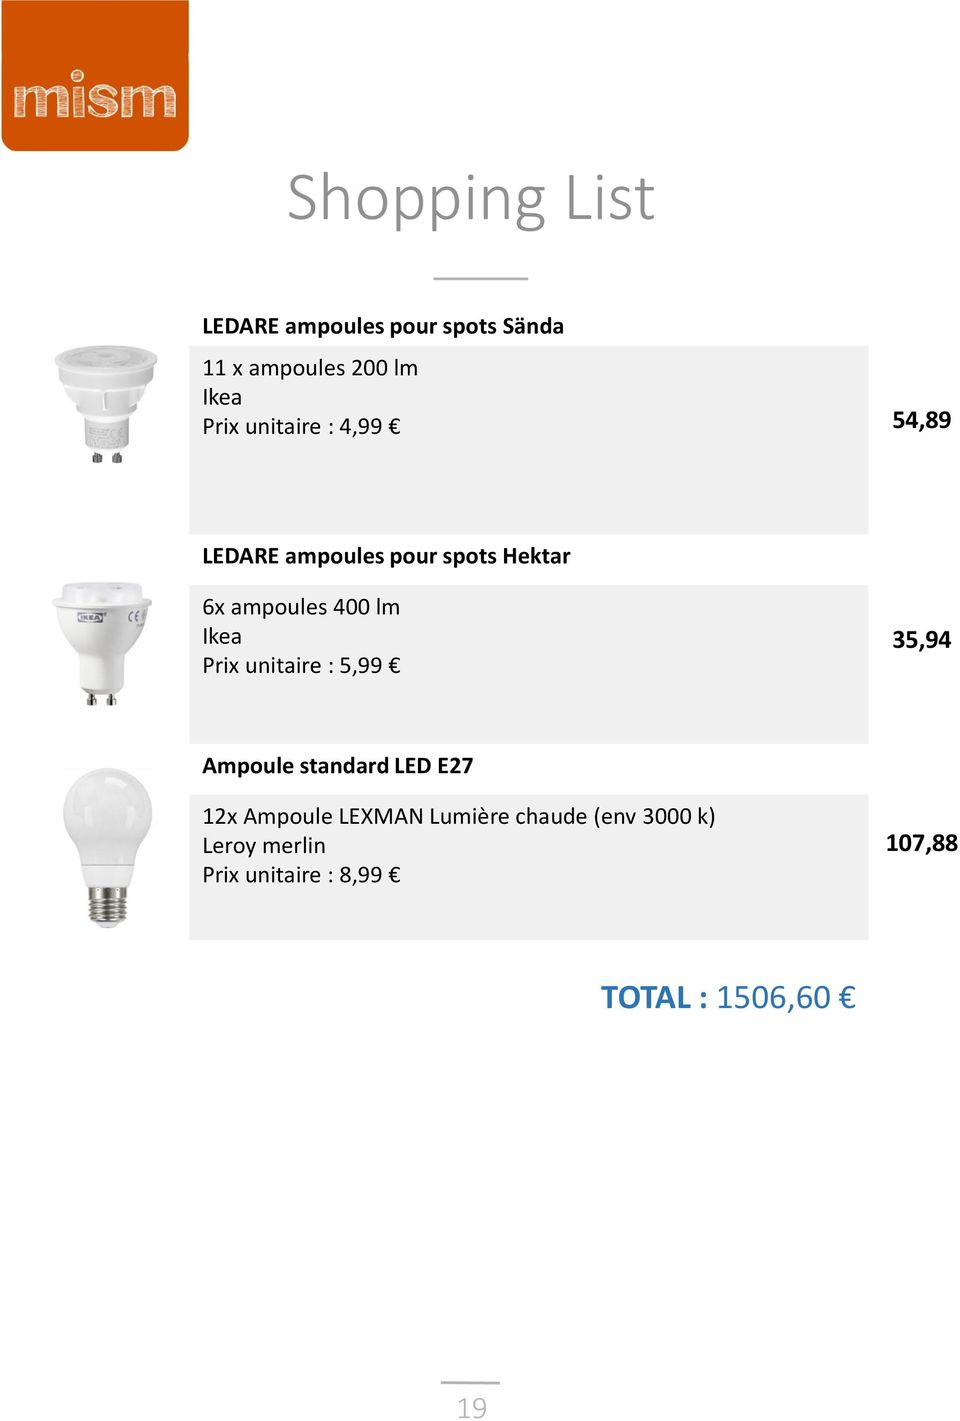 Ikea Prix unitaire : 5,99 35,94 Ampoule standard LED E27 12x Ampoule LEXMAN